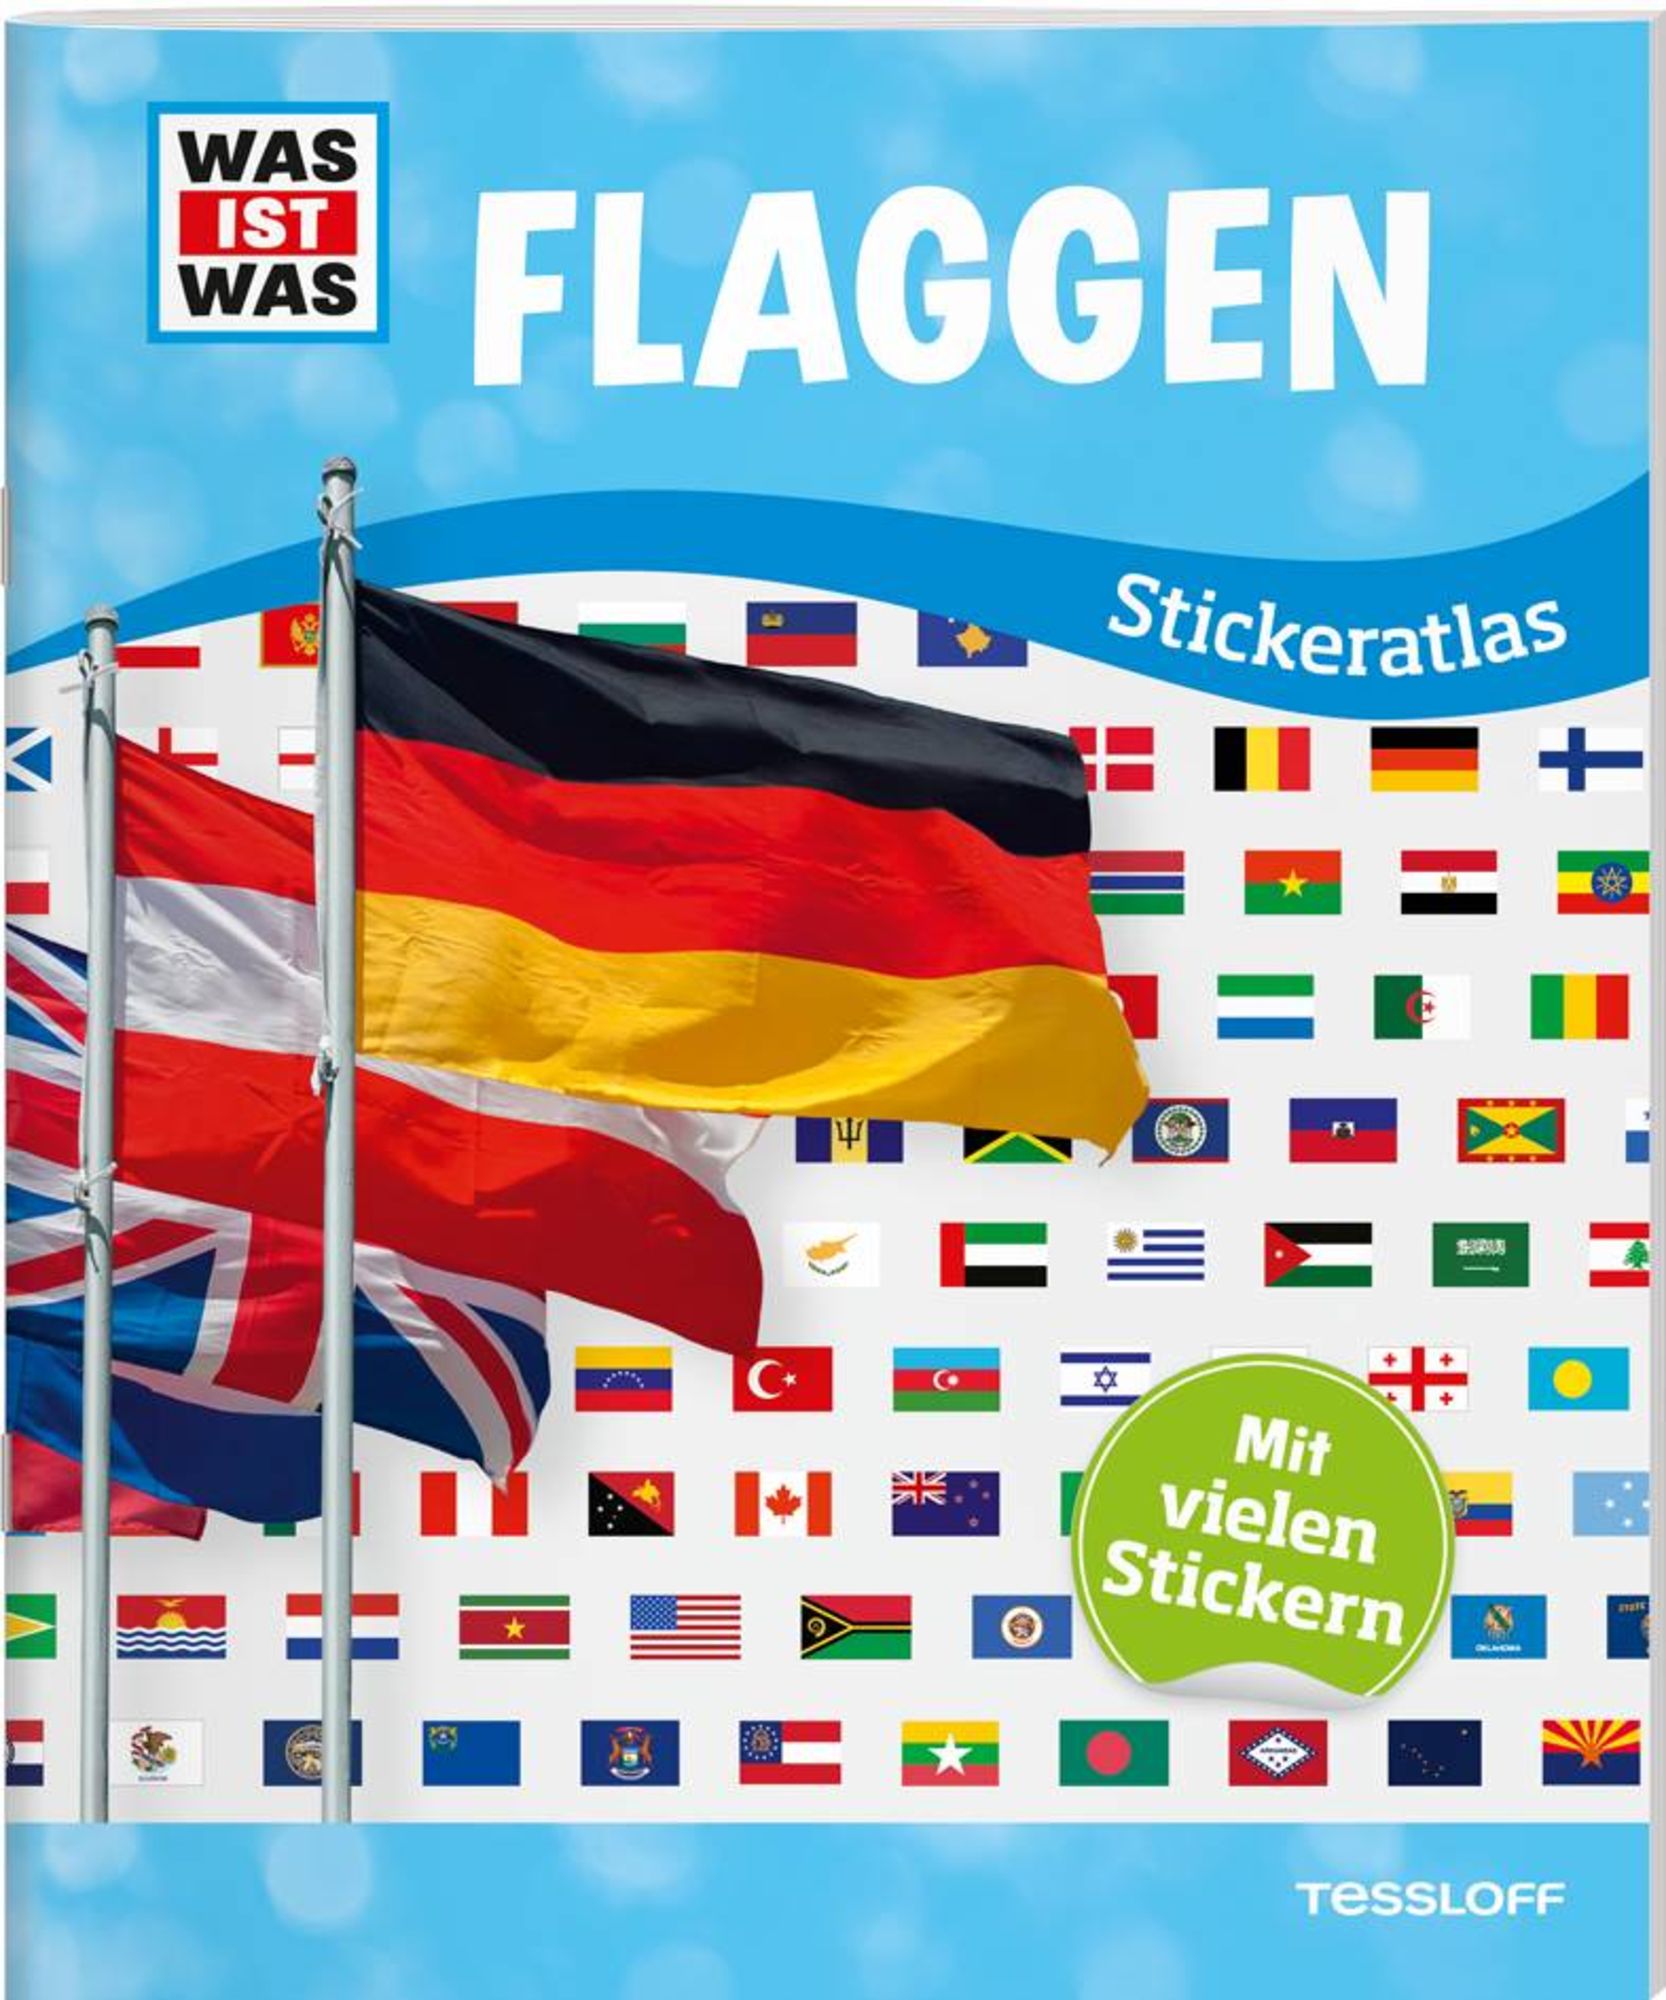 https://images.thalia.media/-/BF2000-2000/985eca10f27548f0929d9b70f959d7b4/was-ist-was-sticker-atlas-flaggen-taschenbuch.jpeg